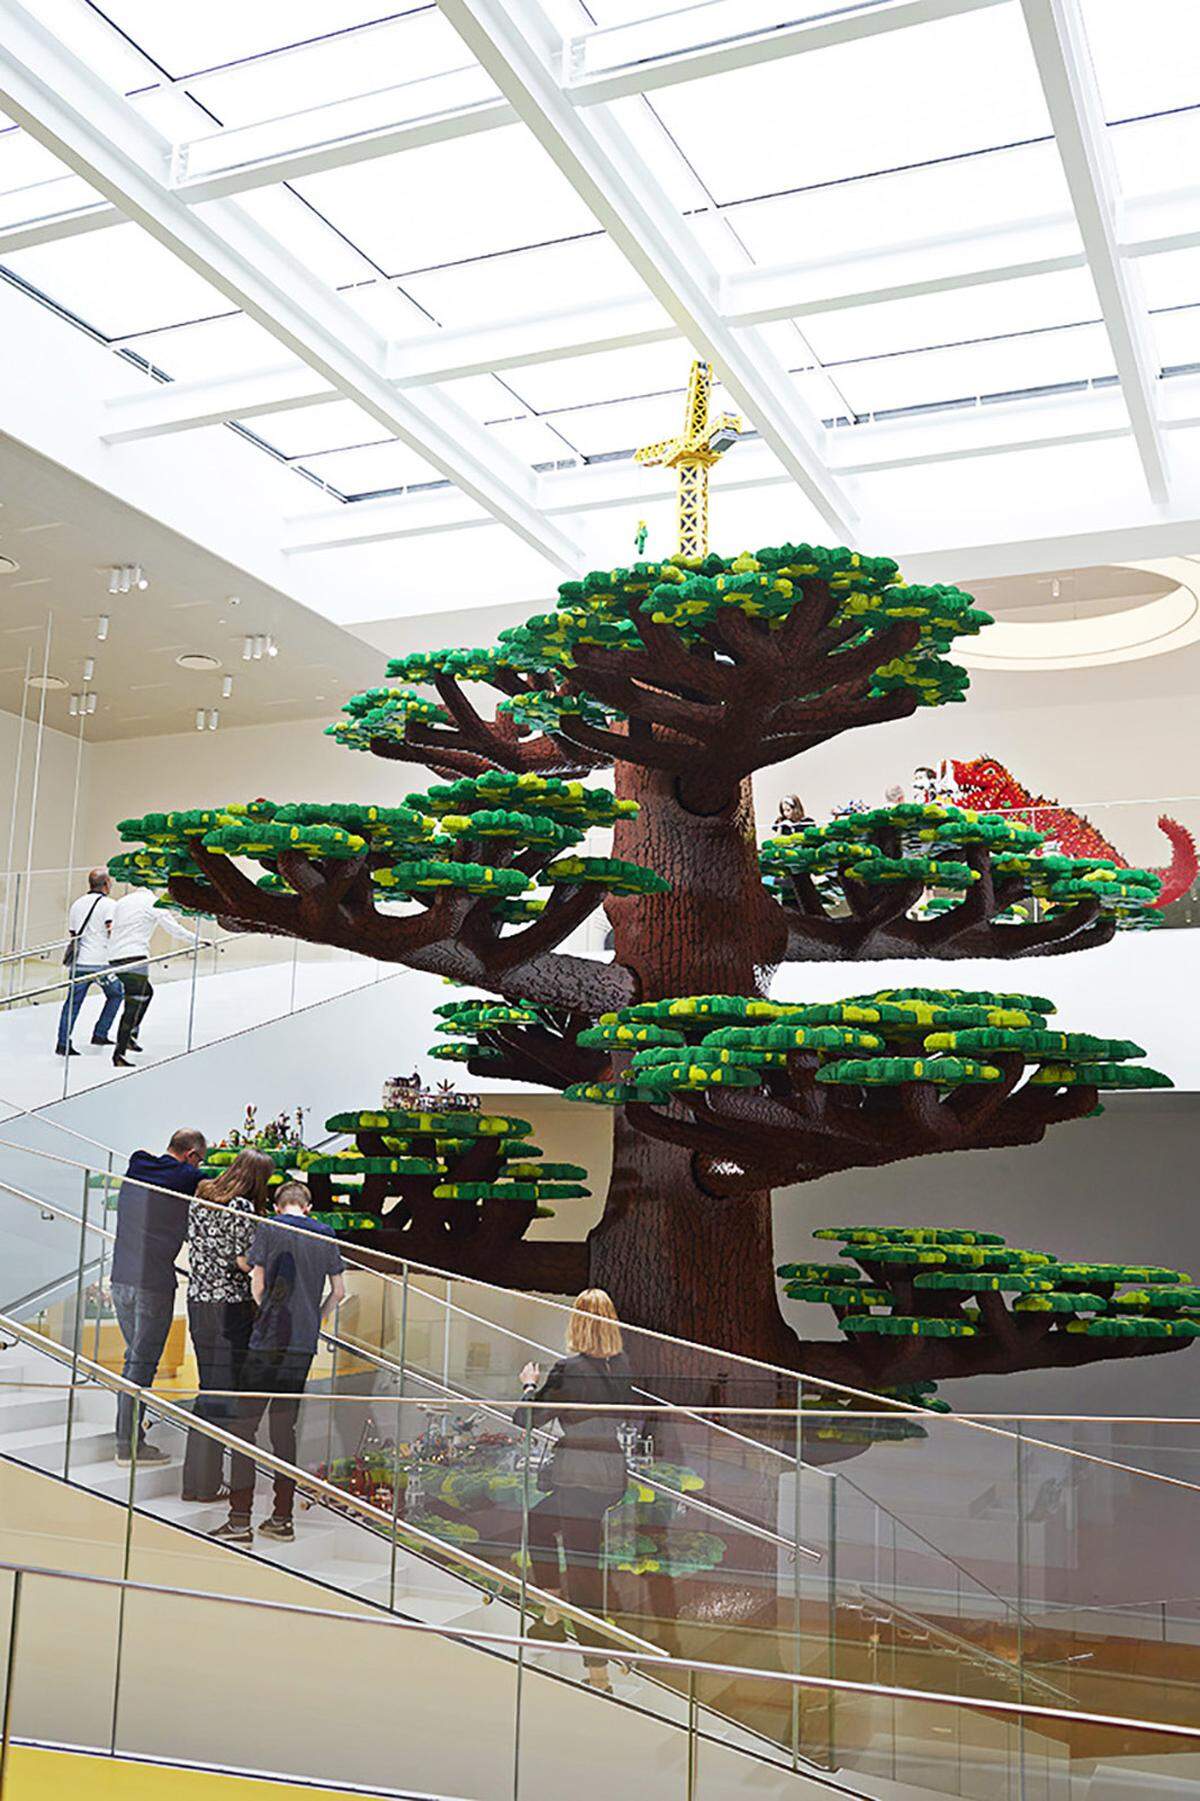 Eines der Highlights des Lego-Hauses, das einen öffentlichen Teil hat und einen Teil, der nur mit Eintrittskarten zu entdecken ist, ist der große Baum im Foyer. Der 15 Meter hohe "Tree of Creativity" wiegt 20 Tonnen. 1200 Stunden dauerte es, ihn aufzubauen.